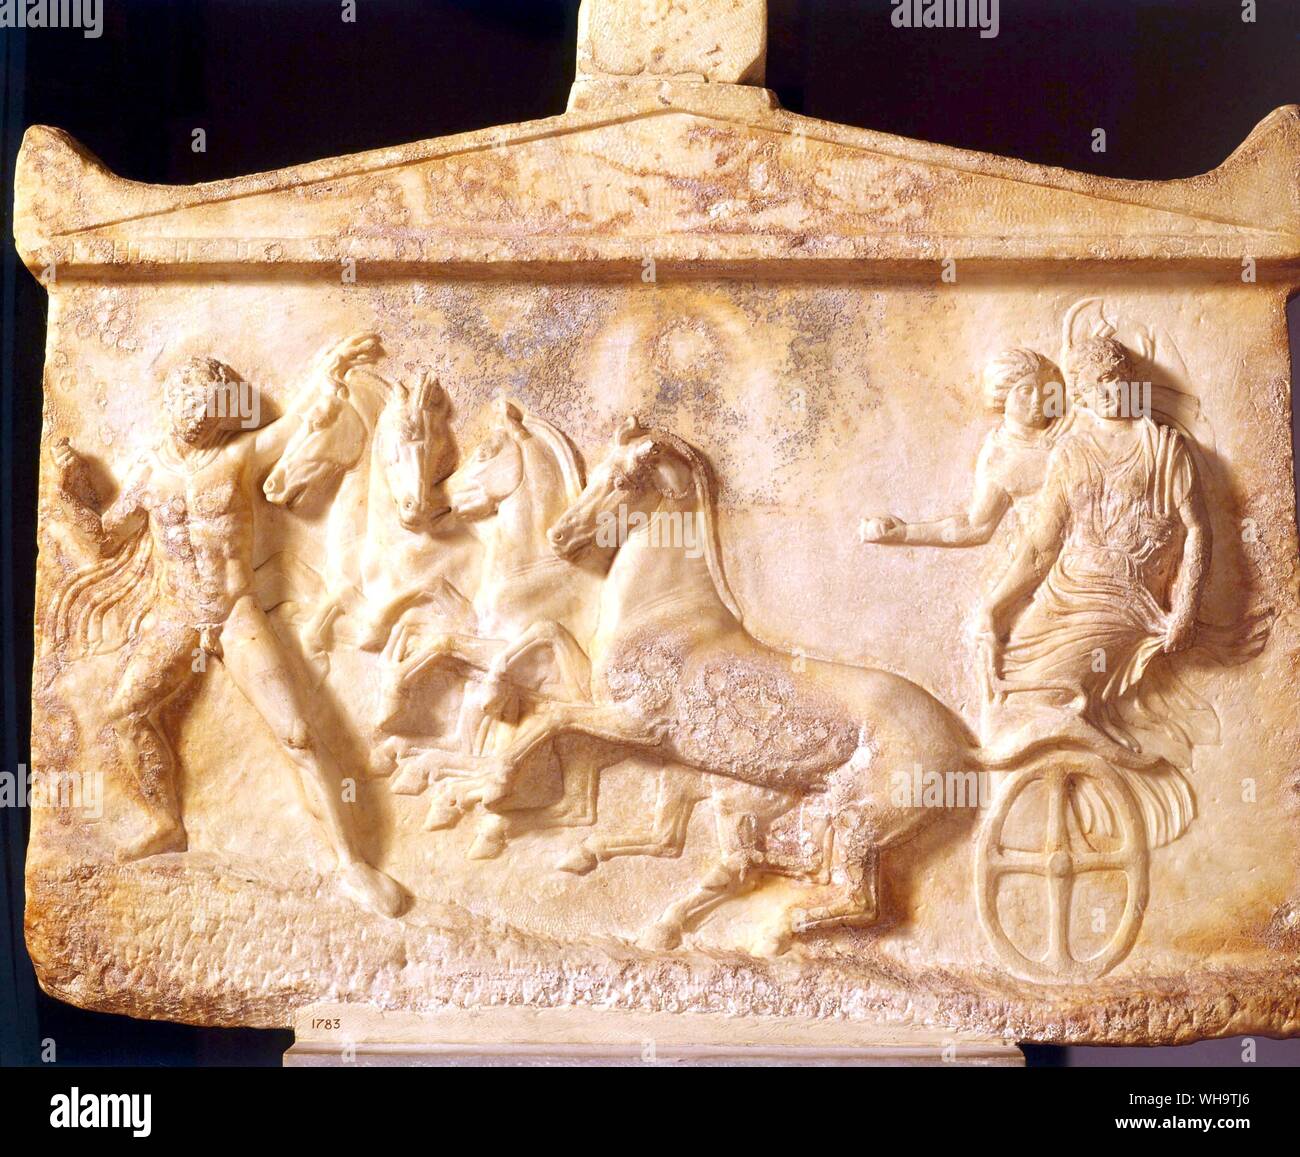 Pietra tombale che mostra un eroe greco, Echelos, prestando più attenzione a Basile, che egli è il salvataggio dell'oltretomba, rispetto ai cavalli, che sono opportunamente dover lottare in salita. Hermes, che mostra il modo, svoltasi probabilmente un dipinto di torcia in mano sinistra. Foto Stock